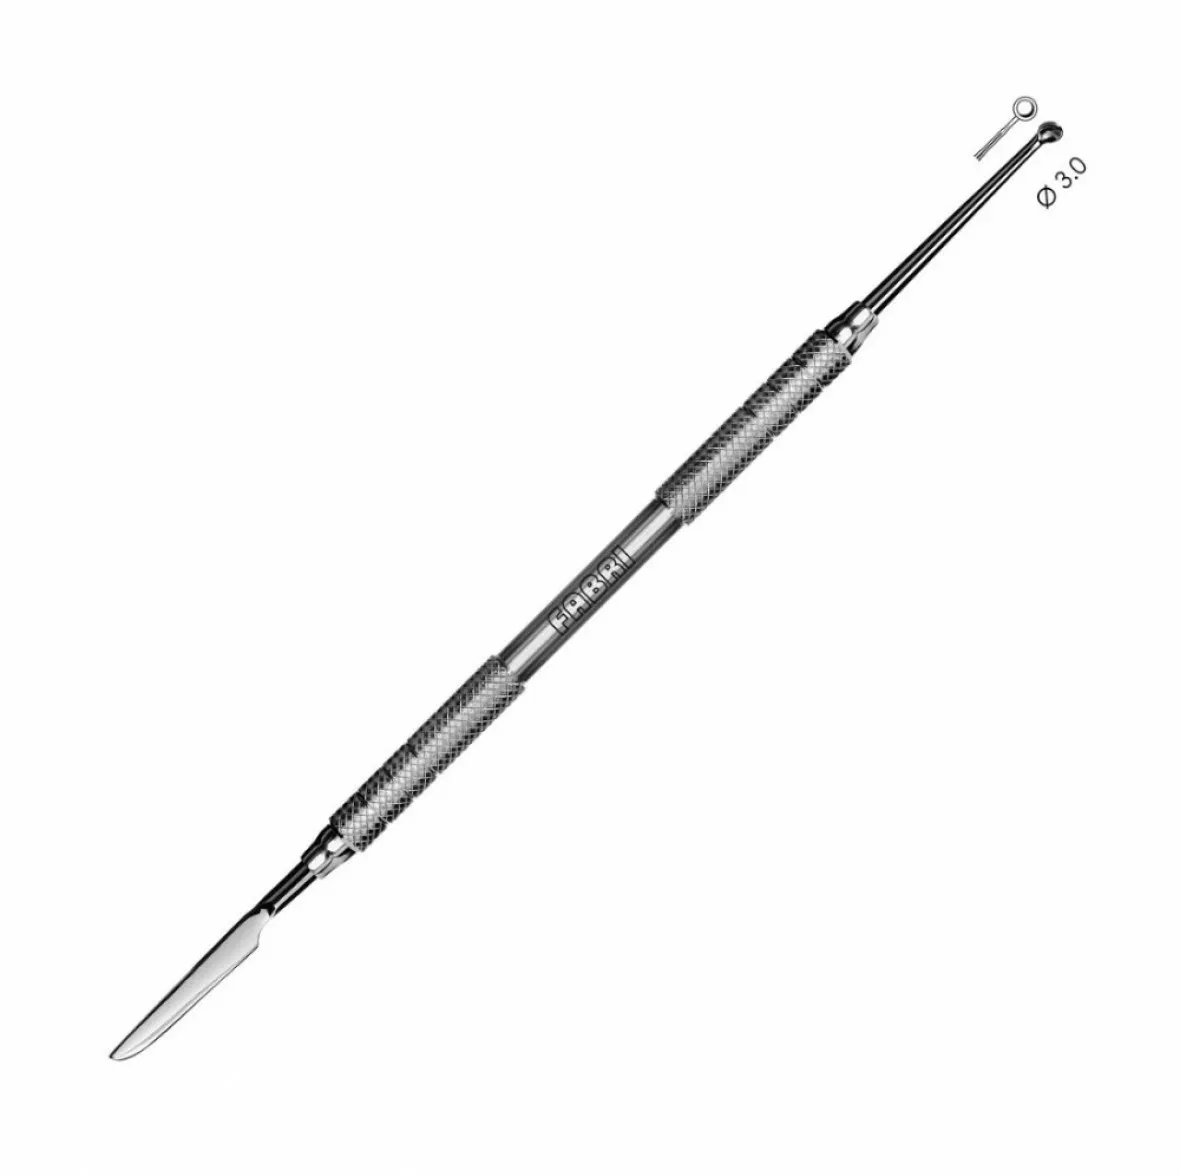 1804-Моделировочный инструмент удлиненный для металлокерамики и воска, лопатка чашка d=3 мм, ручка 6 мм